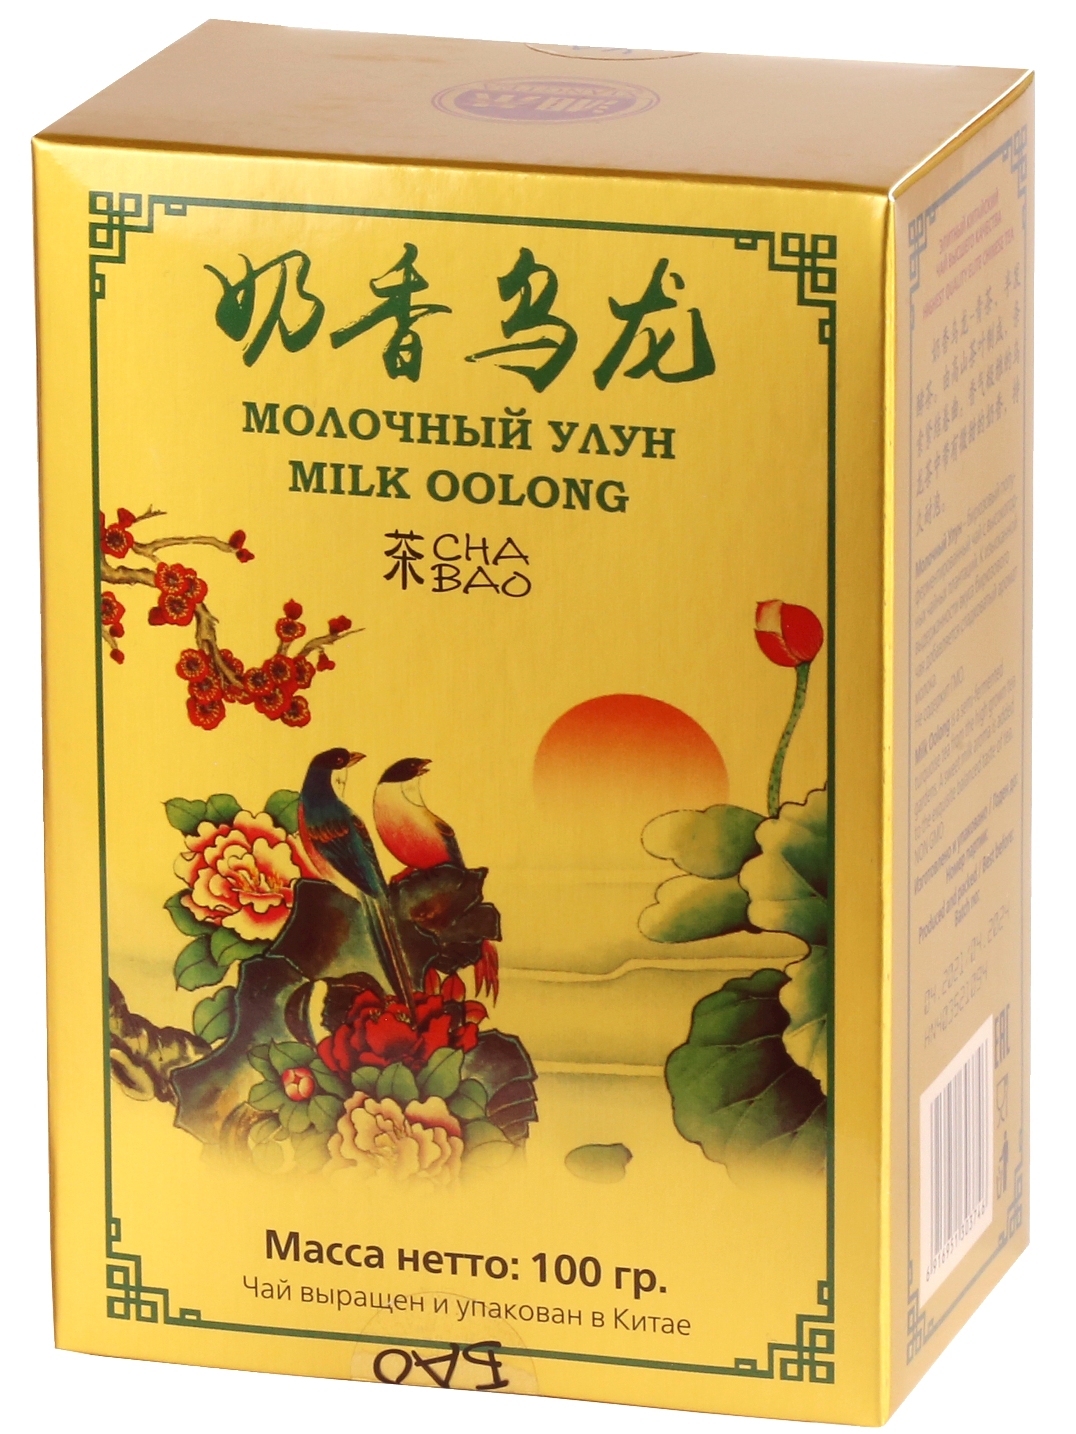 Чай бирюзовый листовой ЧА БАО молочный улун, Китай, 100 г